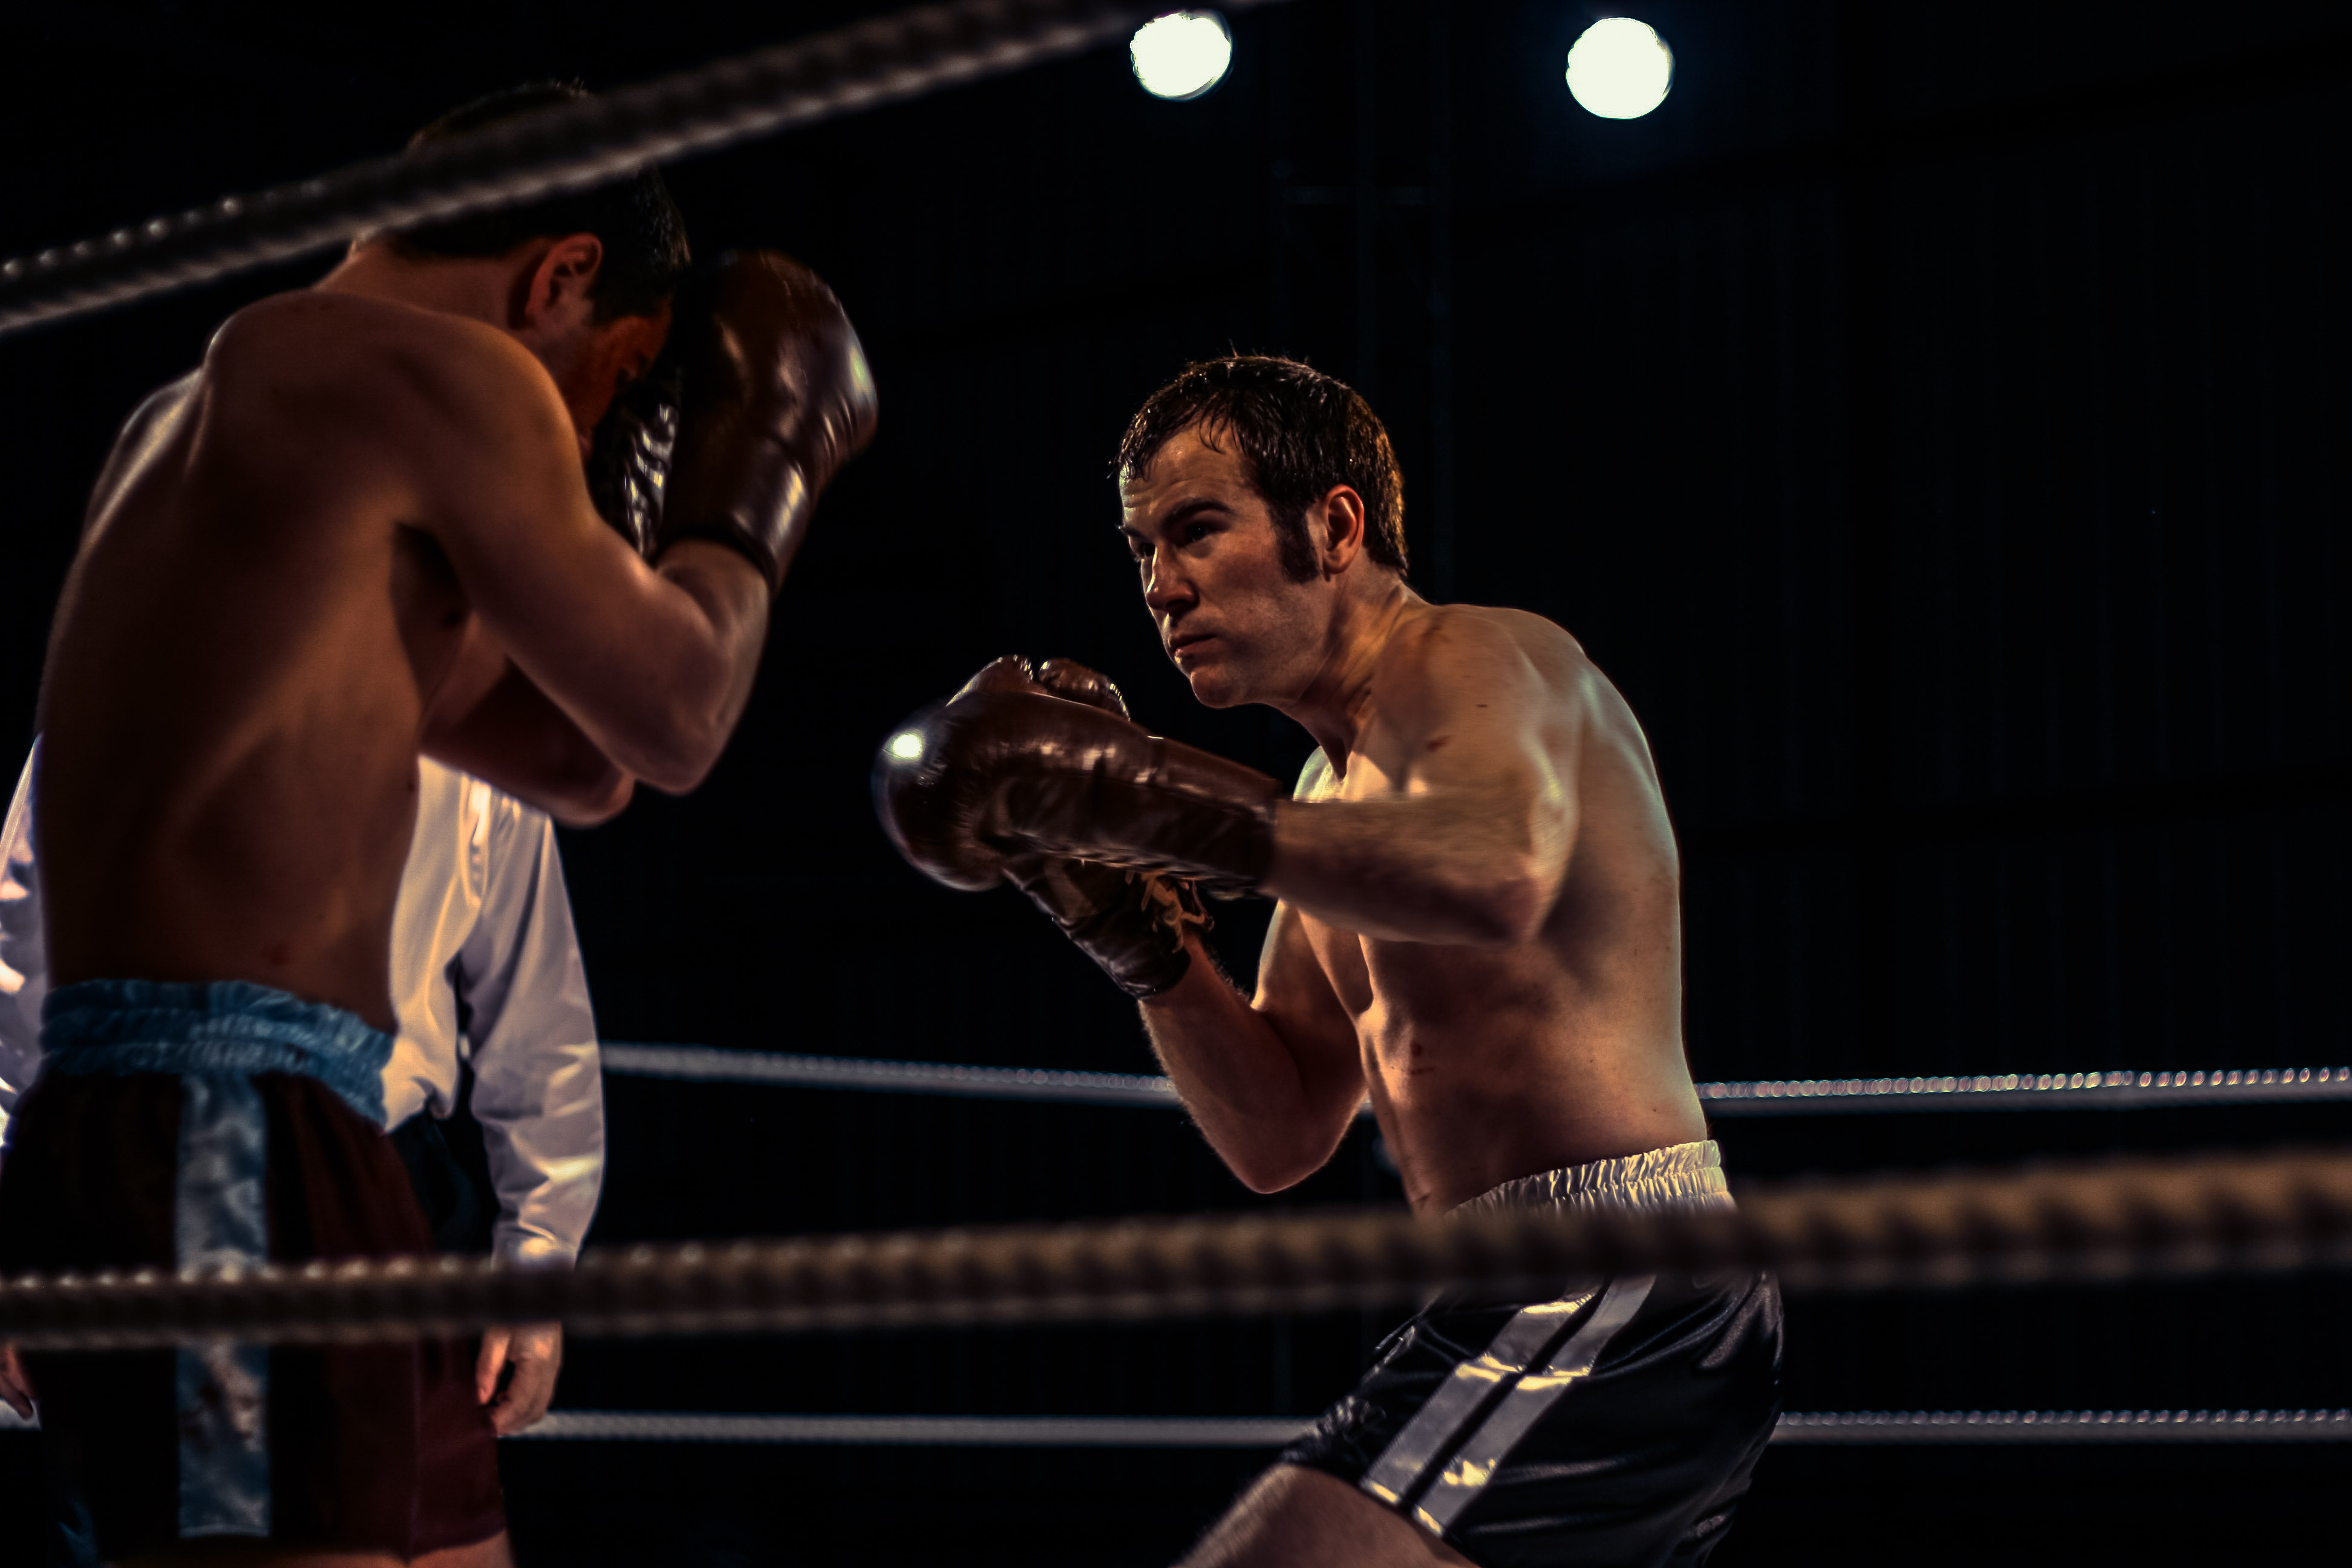 Stuart Brennan boxing as Howard Winstone in the film Risen.